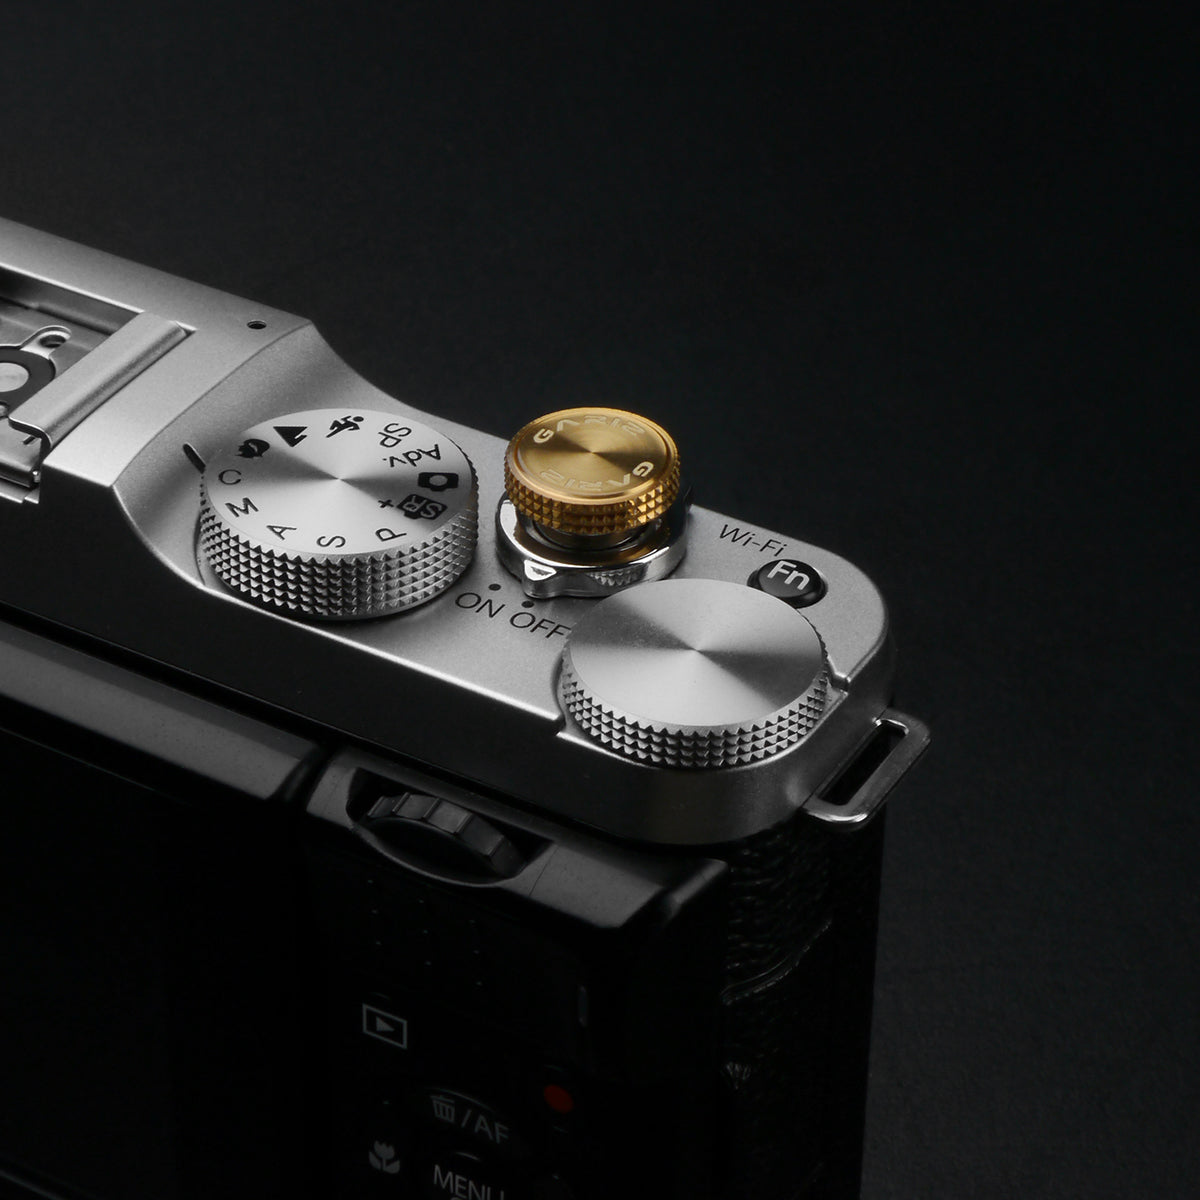 Gariz Sticker type Soft Shutter Button Gold XA-SB6 for Sony Fuji Canon